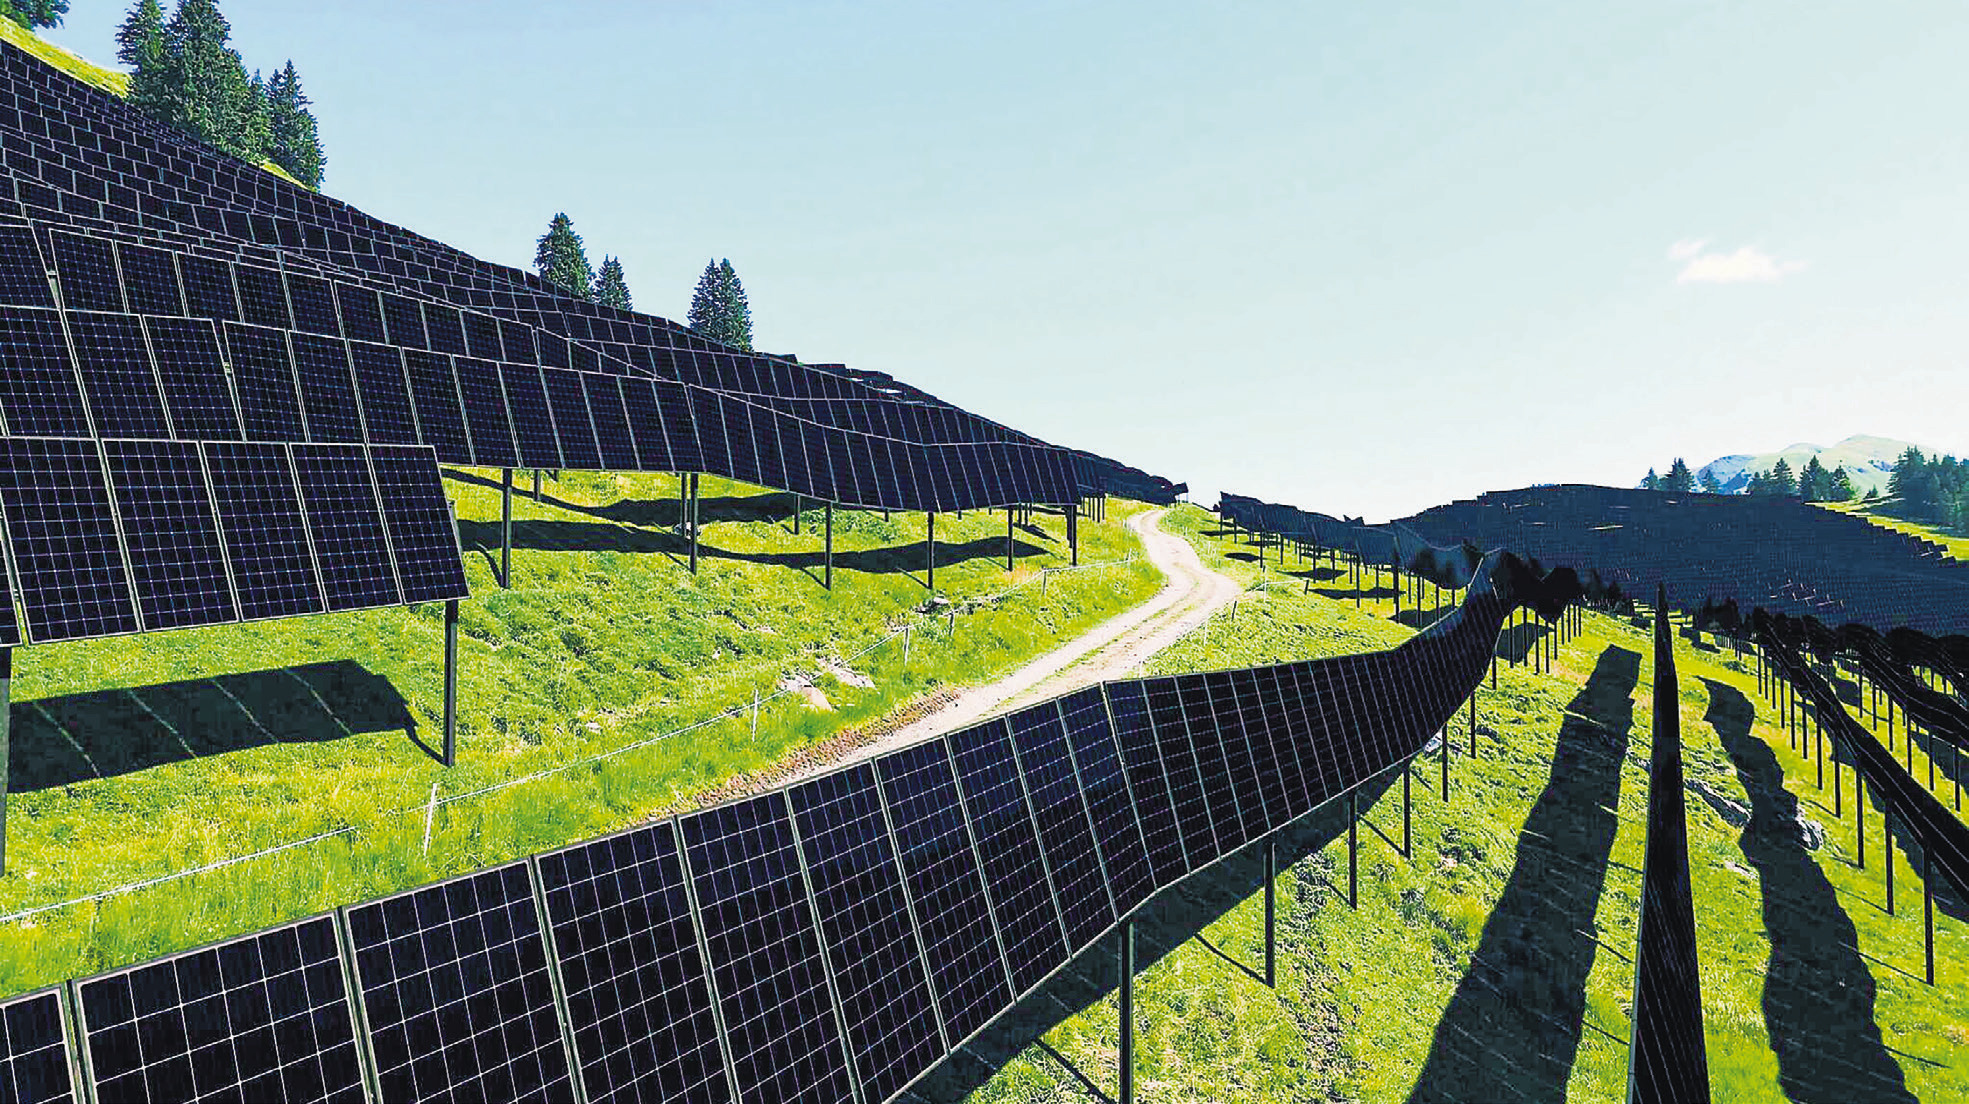 Alpine Solaranlage nimmt erste Hürde